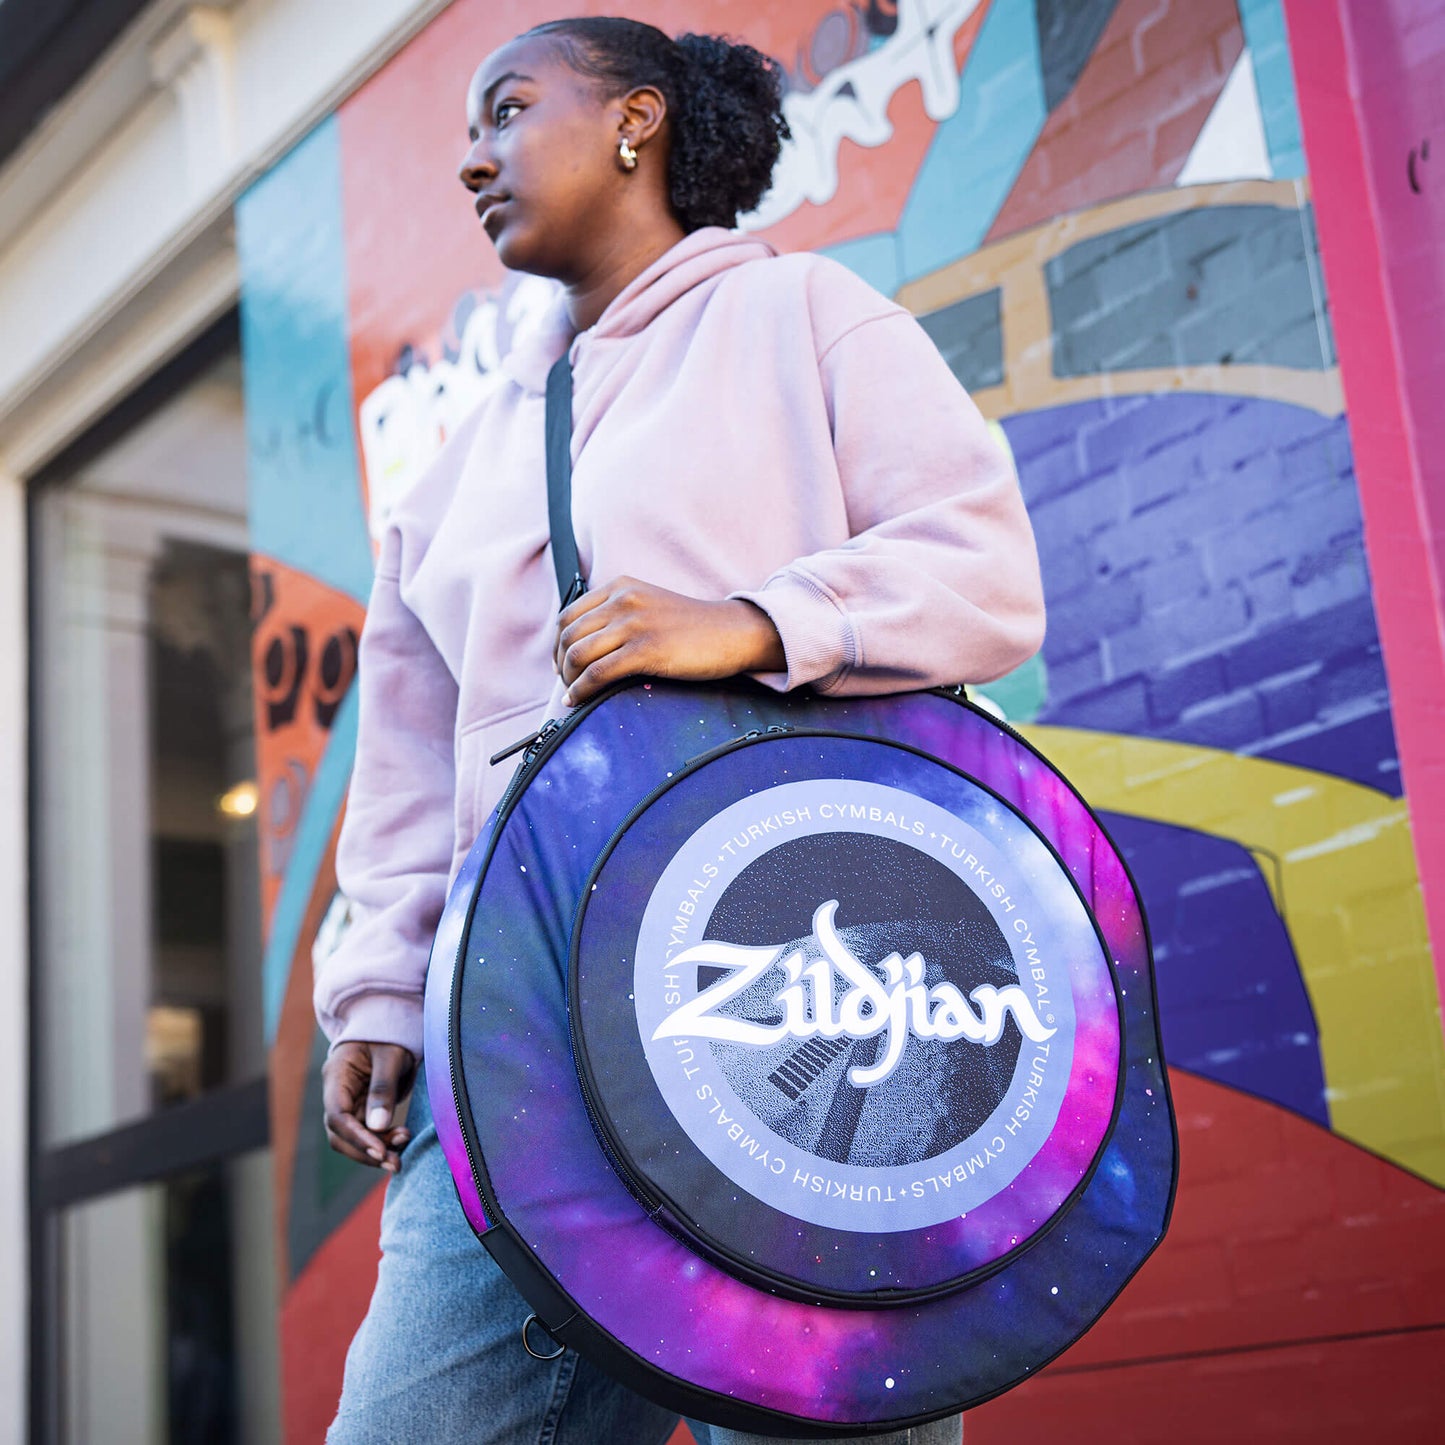 Zildjian 20" Student Cymbal Backpacks